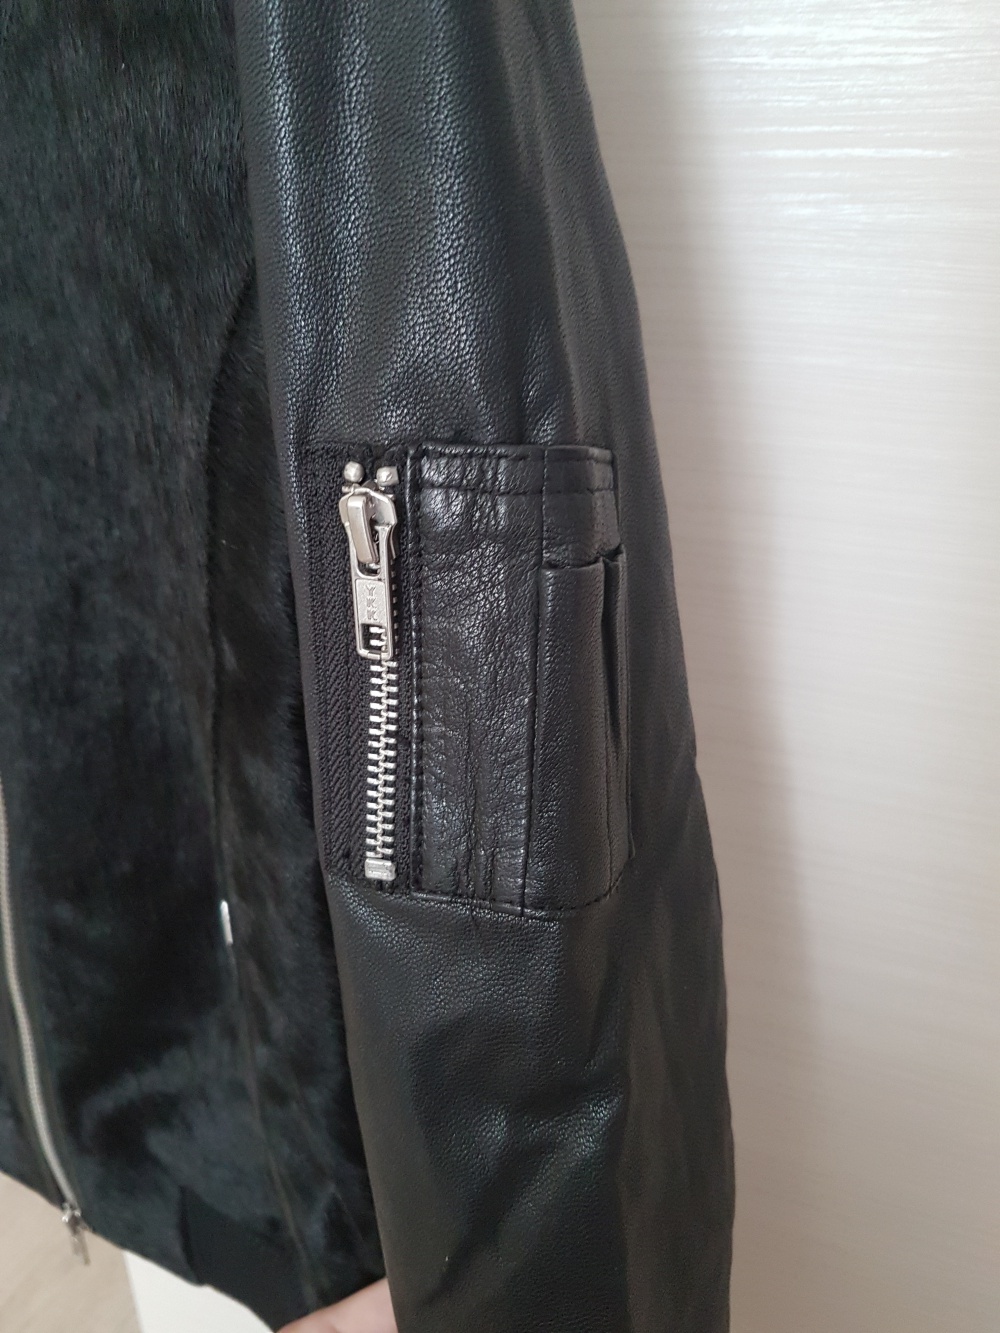 Кожаная куртка Muubaa с меховой отделкой, размер 42-44